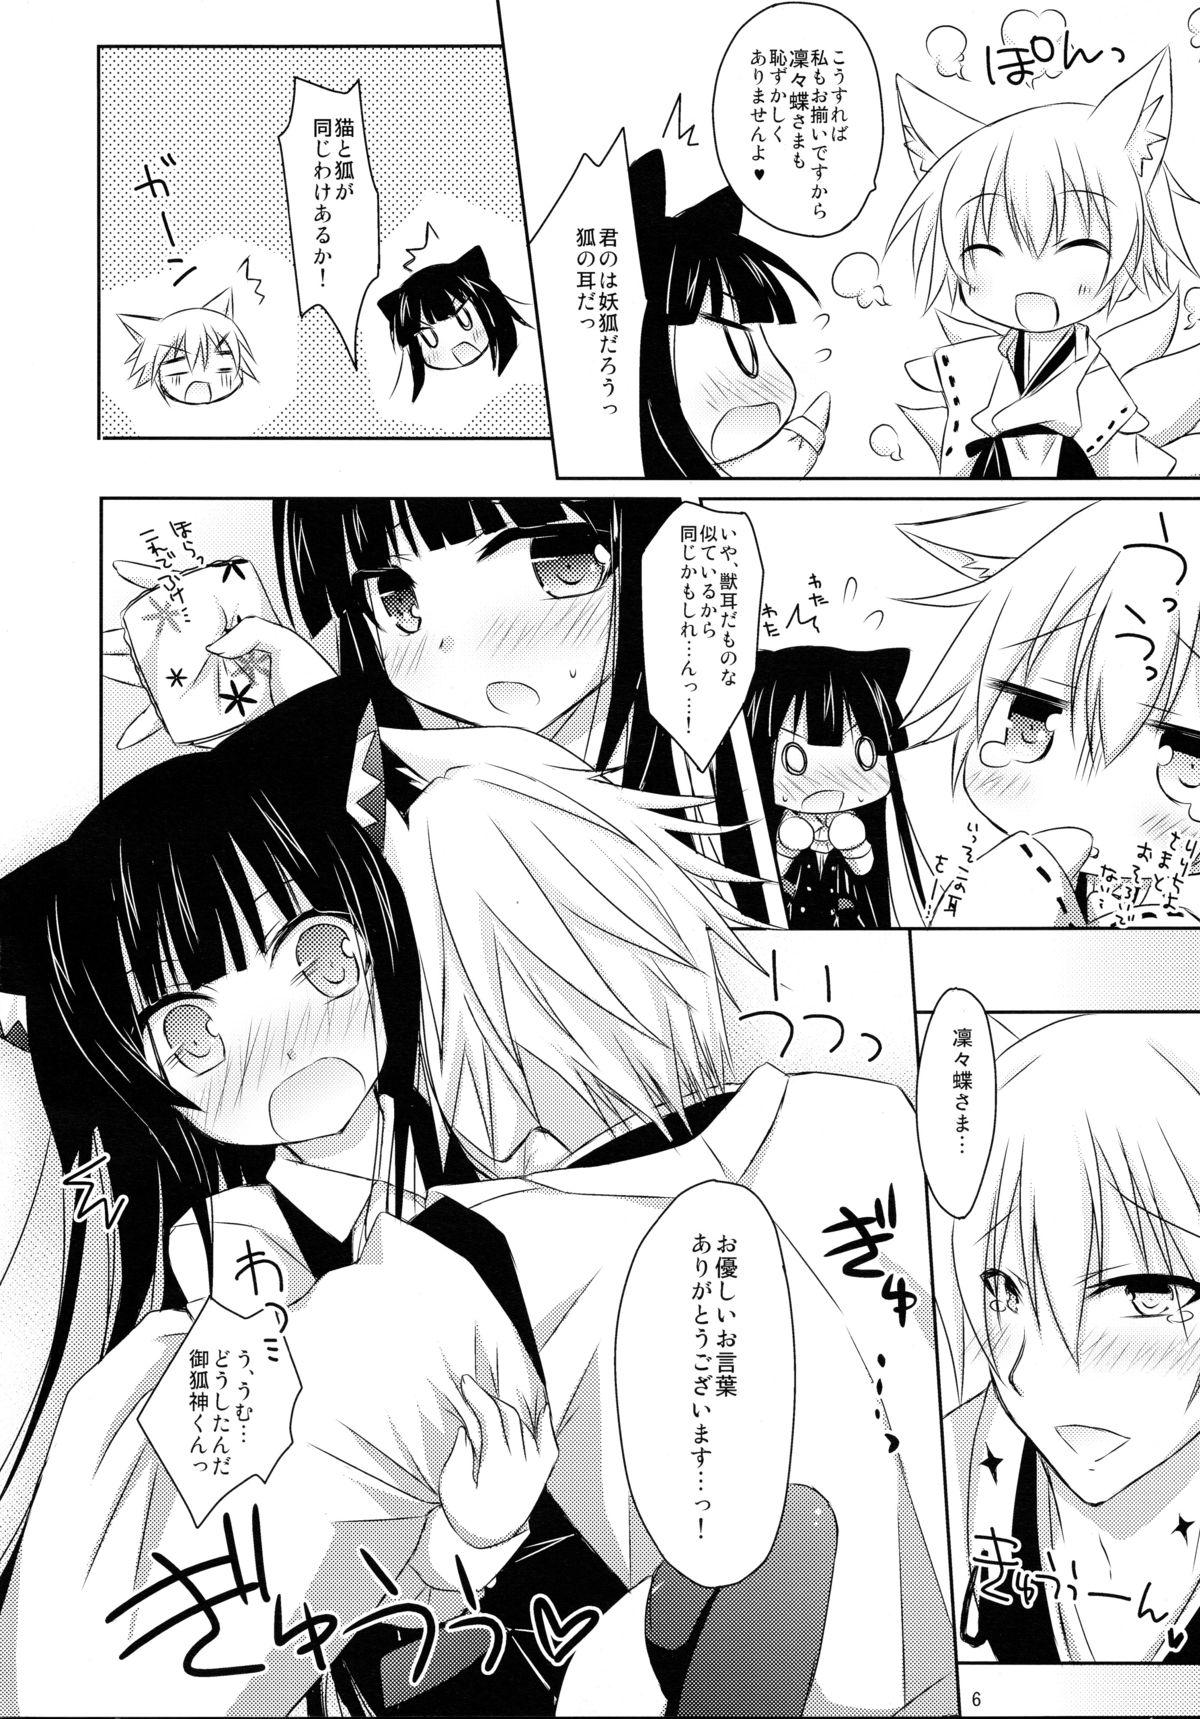 Transsexual Nekochiyo x Yuugi - Inu x boku ss Sissy - Page 6